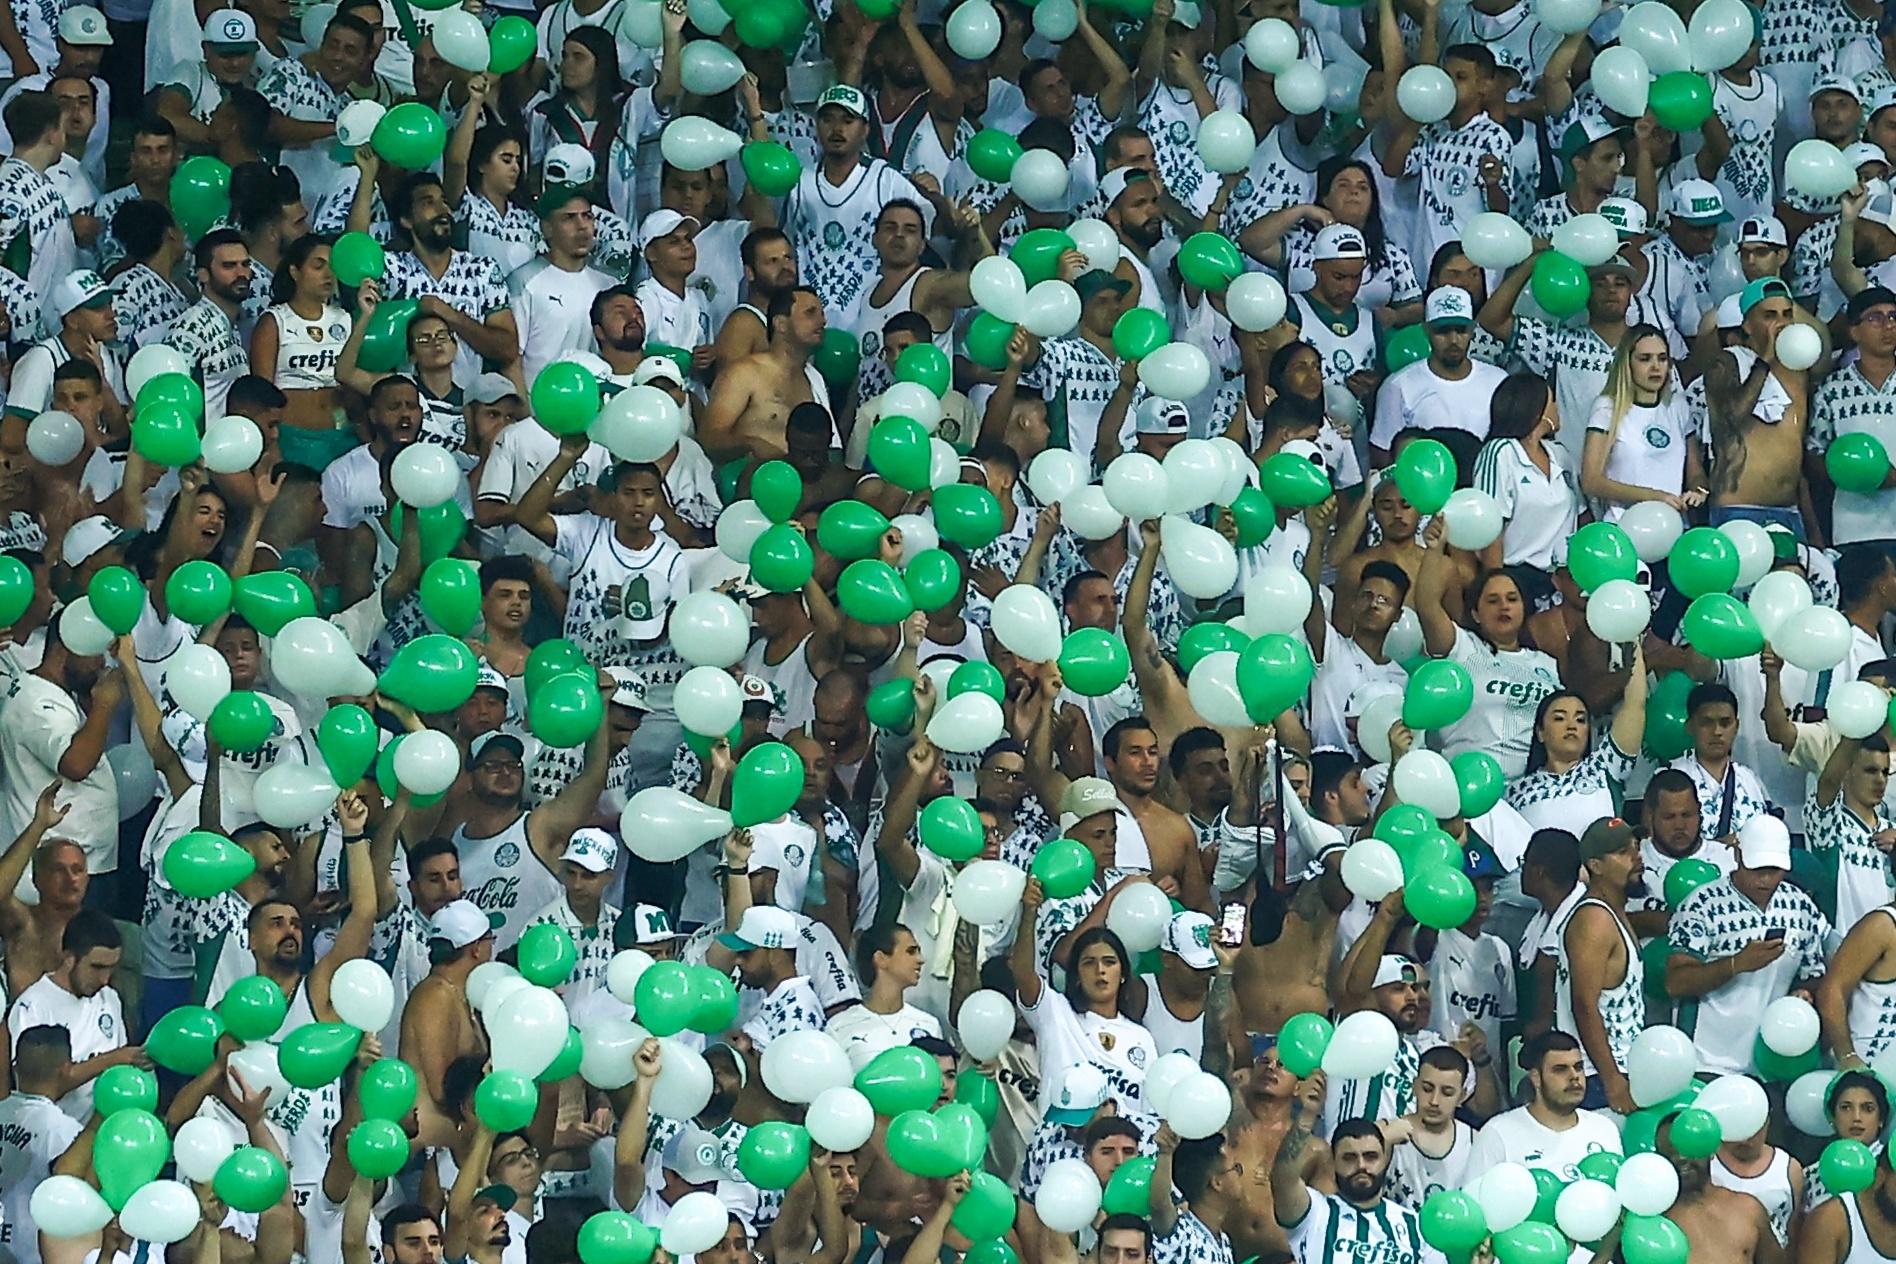 Água Santa x Palmeiras: informações sobre ingressos da final do Paulista